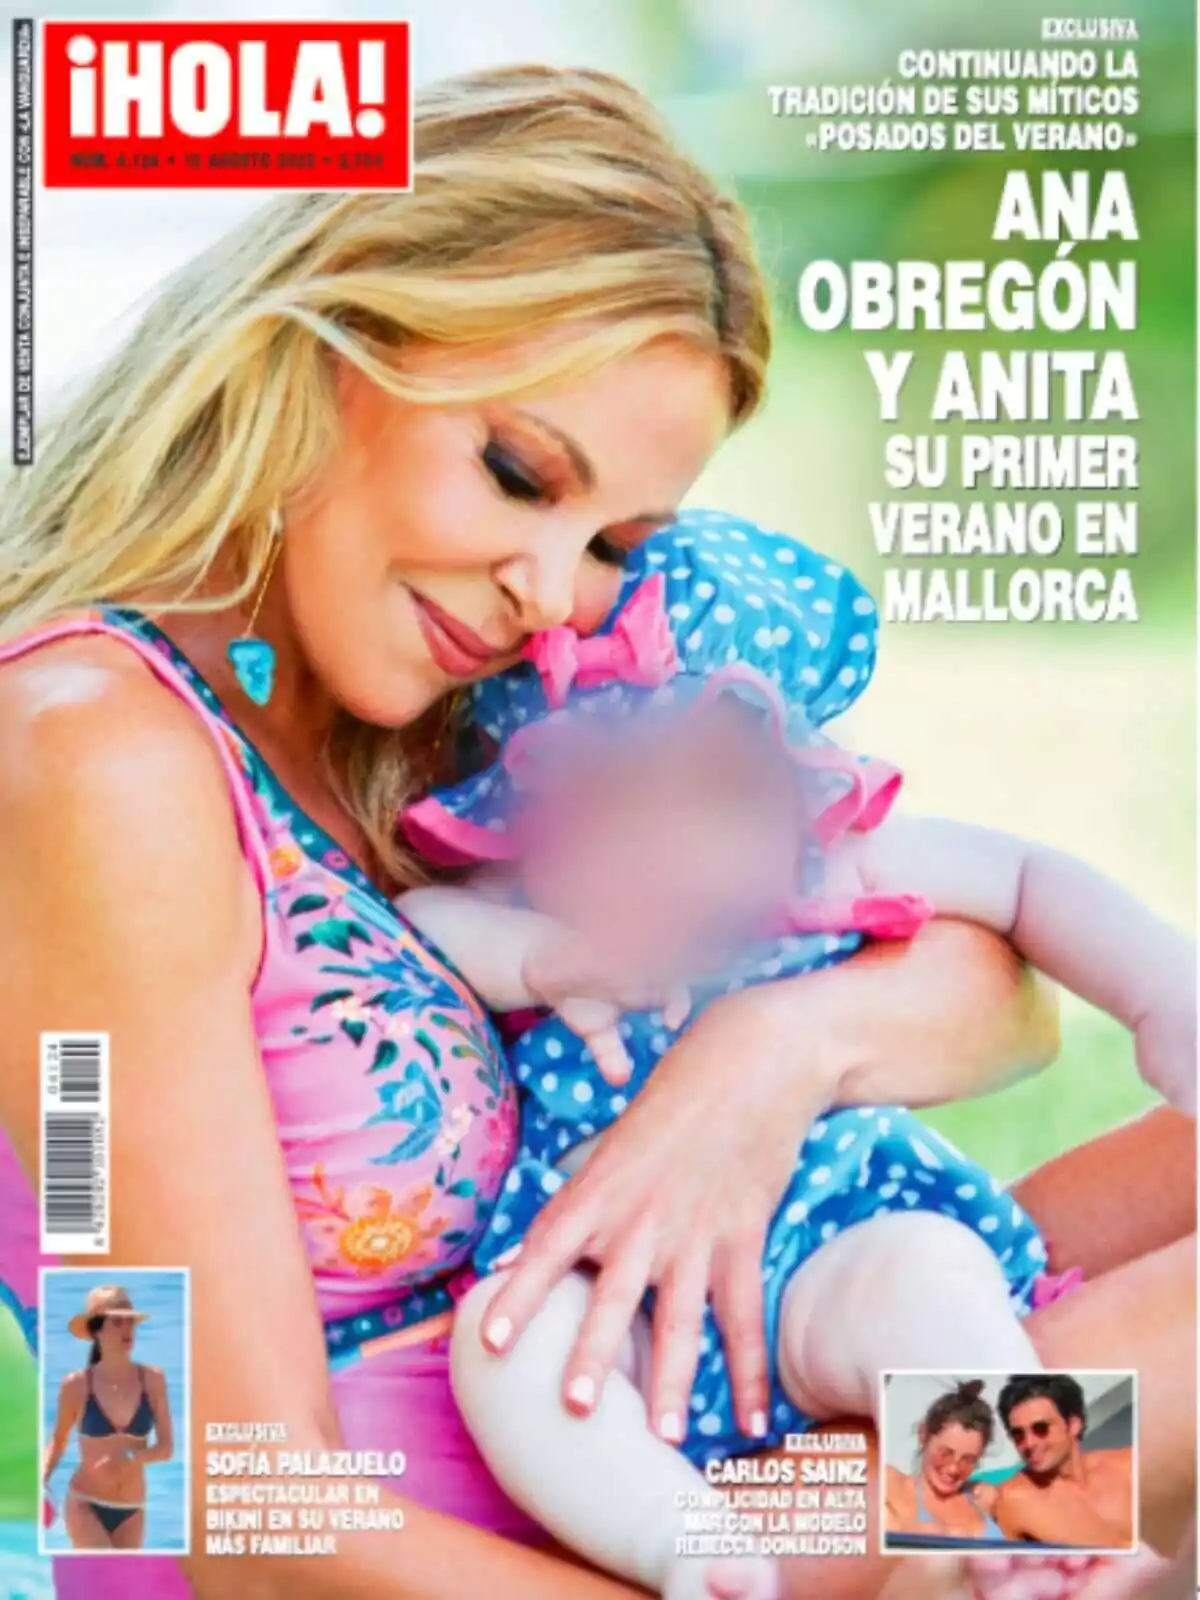 Captura de la portada de la revista 'Hola!' amb Ana Obregón abraçant la seva néta, Anita